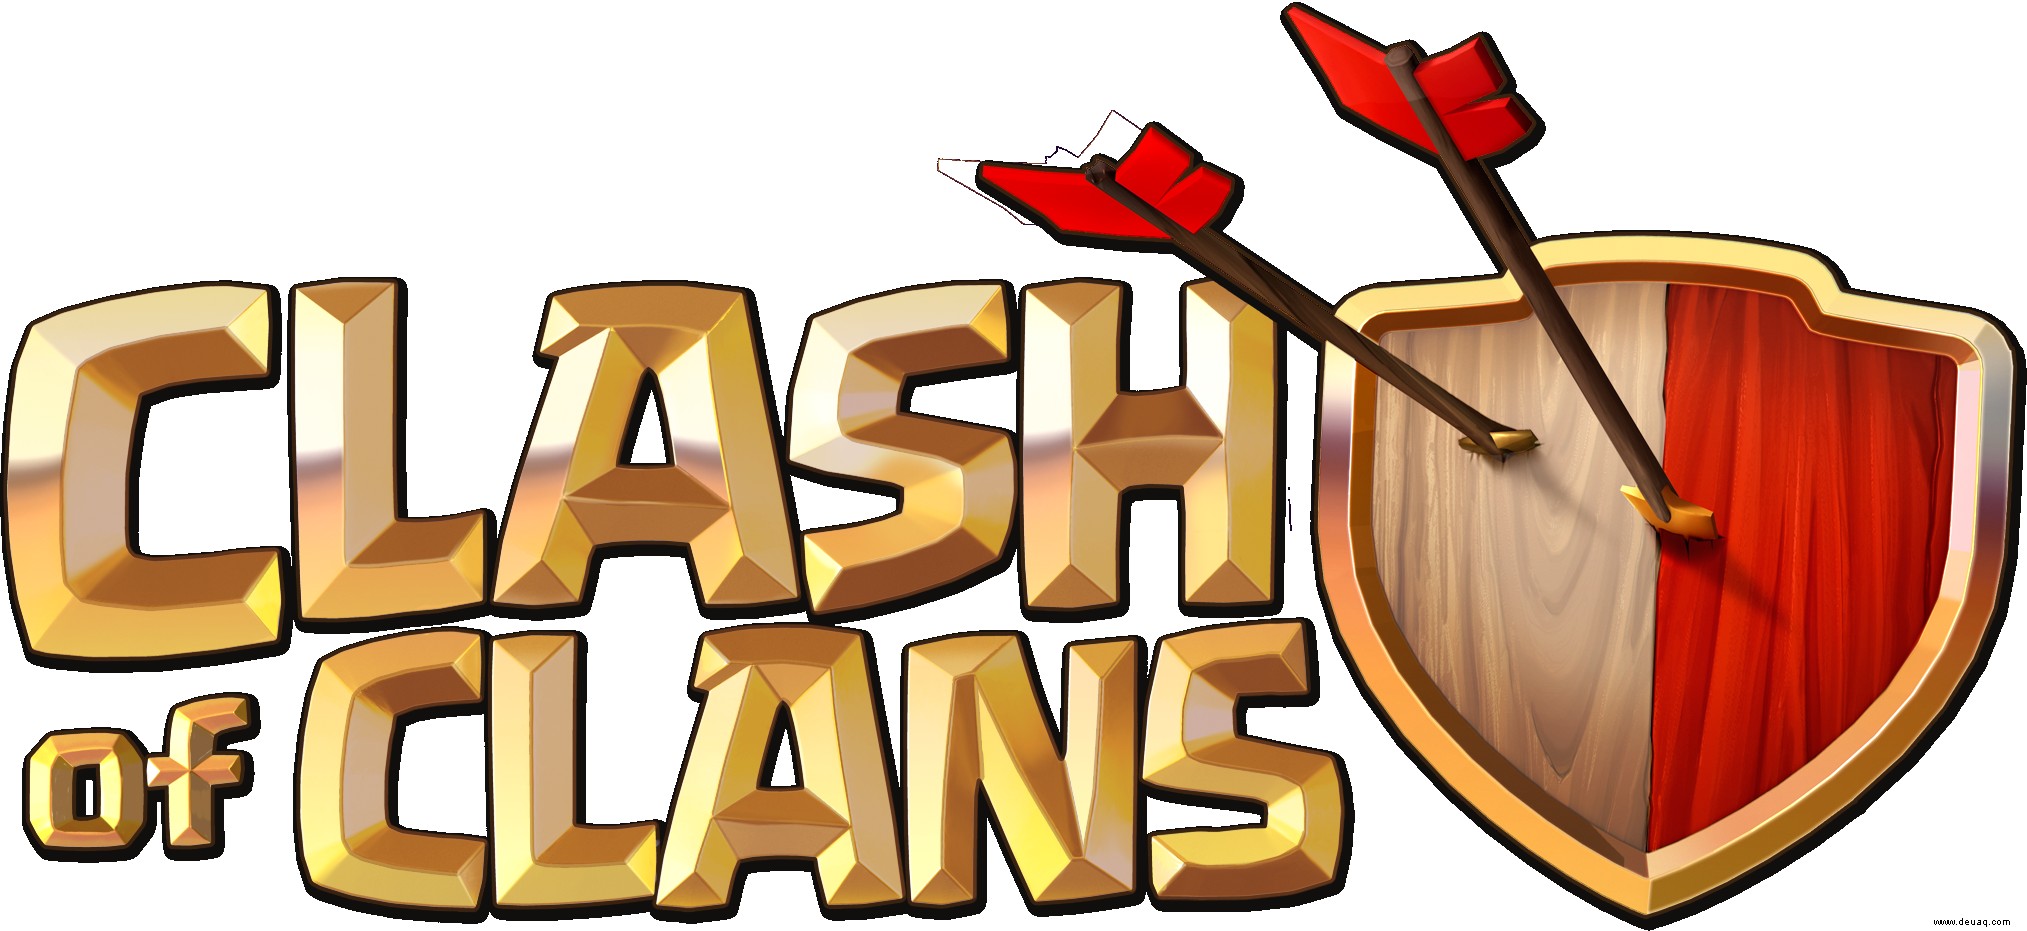 Clash of Clans-Tipps:13 Tipps für den Einstieg! 